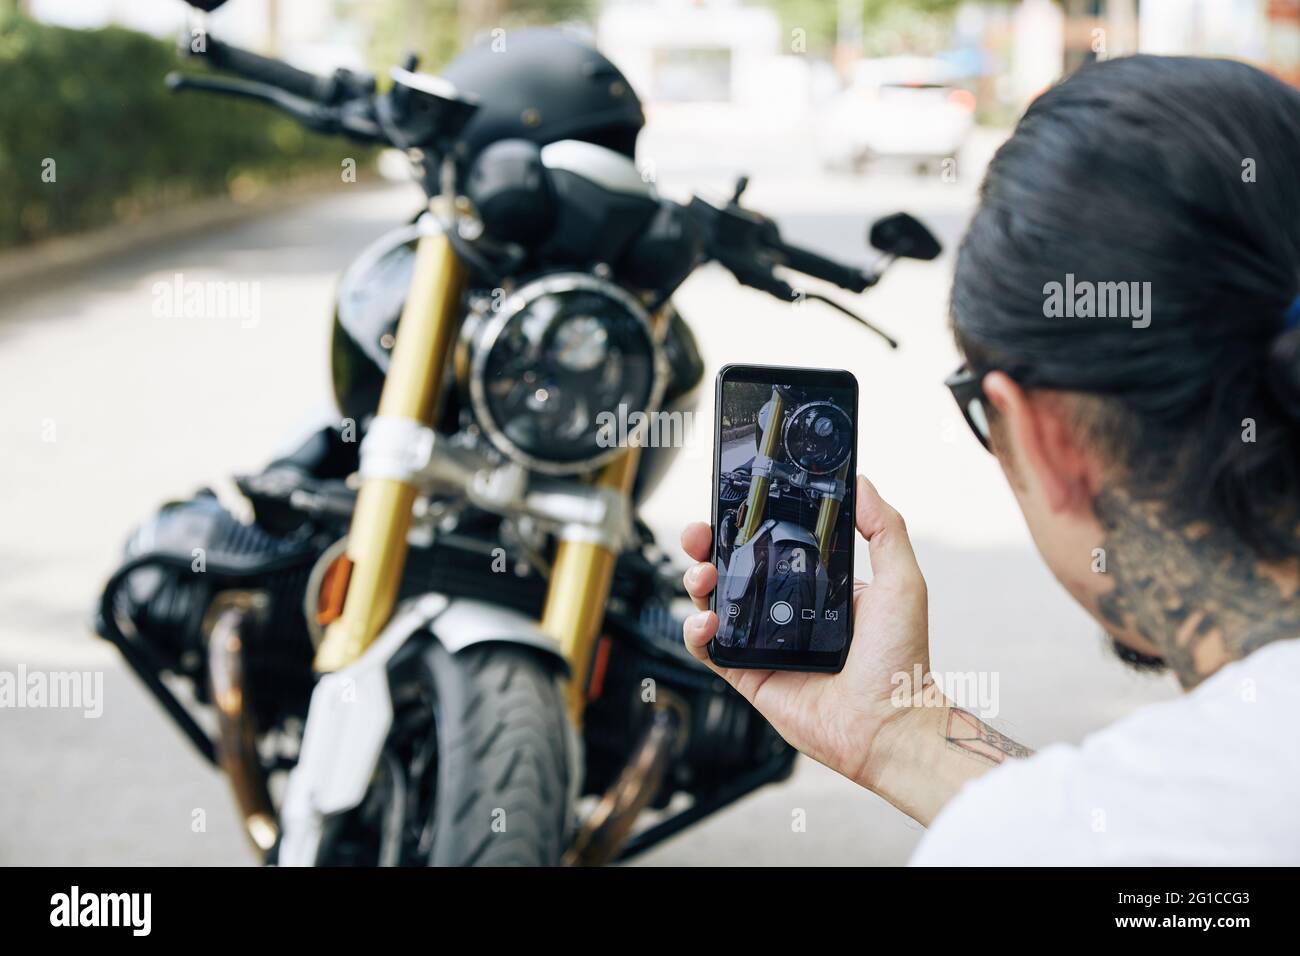 Mann, der coole Fotos von seinem Motorrad auf dem Smartphone gemacht hat, um es mit Freunden zu teilen oder in den sozialen Medien zu posten Stockfoto